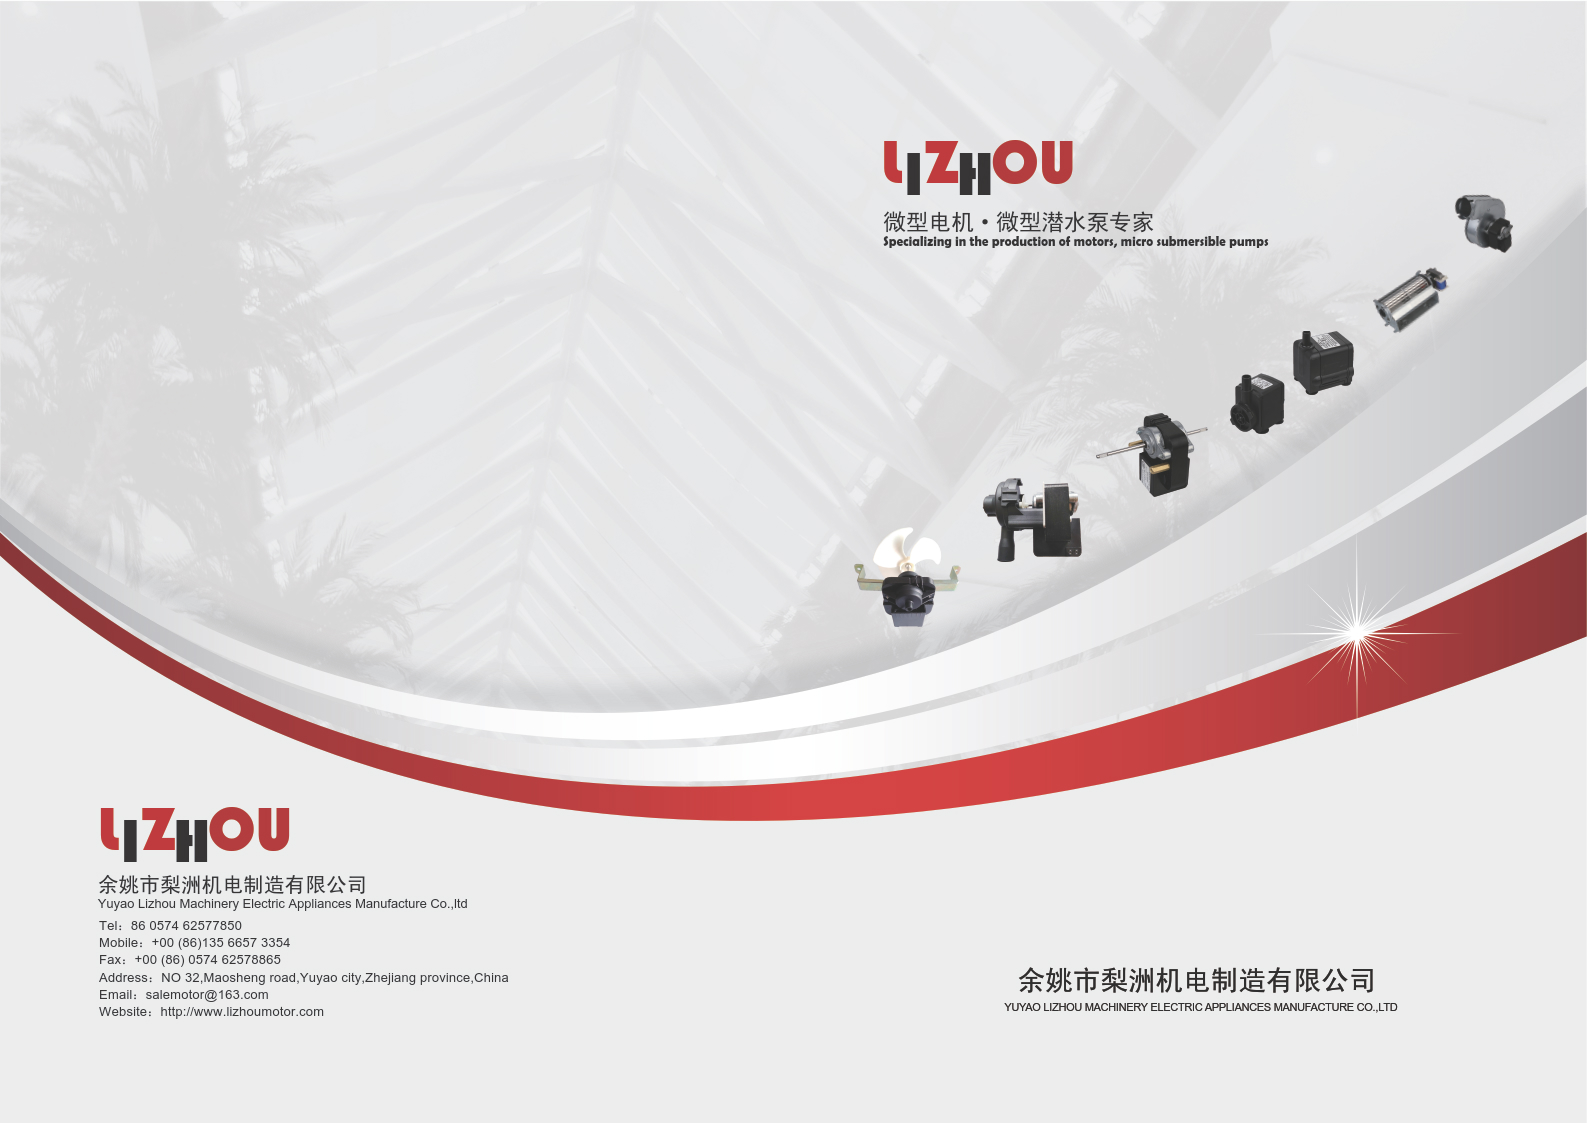 Yuyao Lizhou MACHINERY&ELECTRIC Appliances Manufacture Co., Ltd